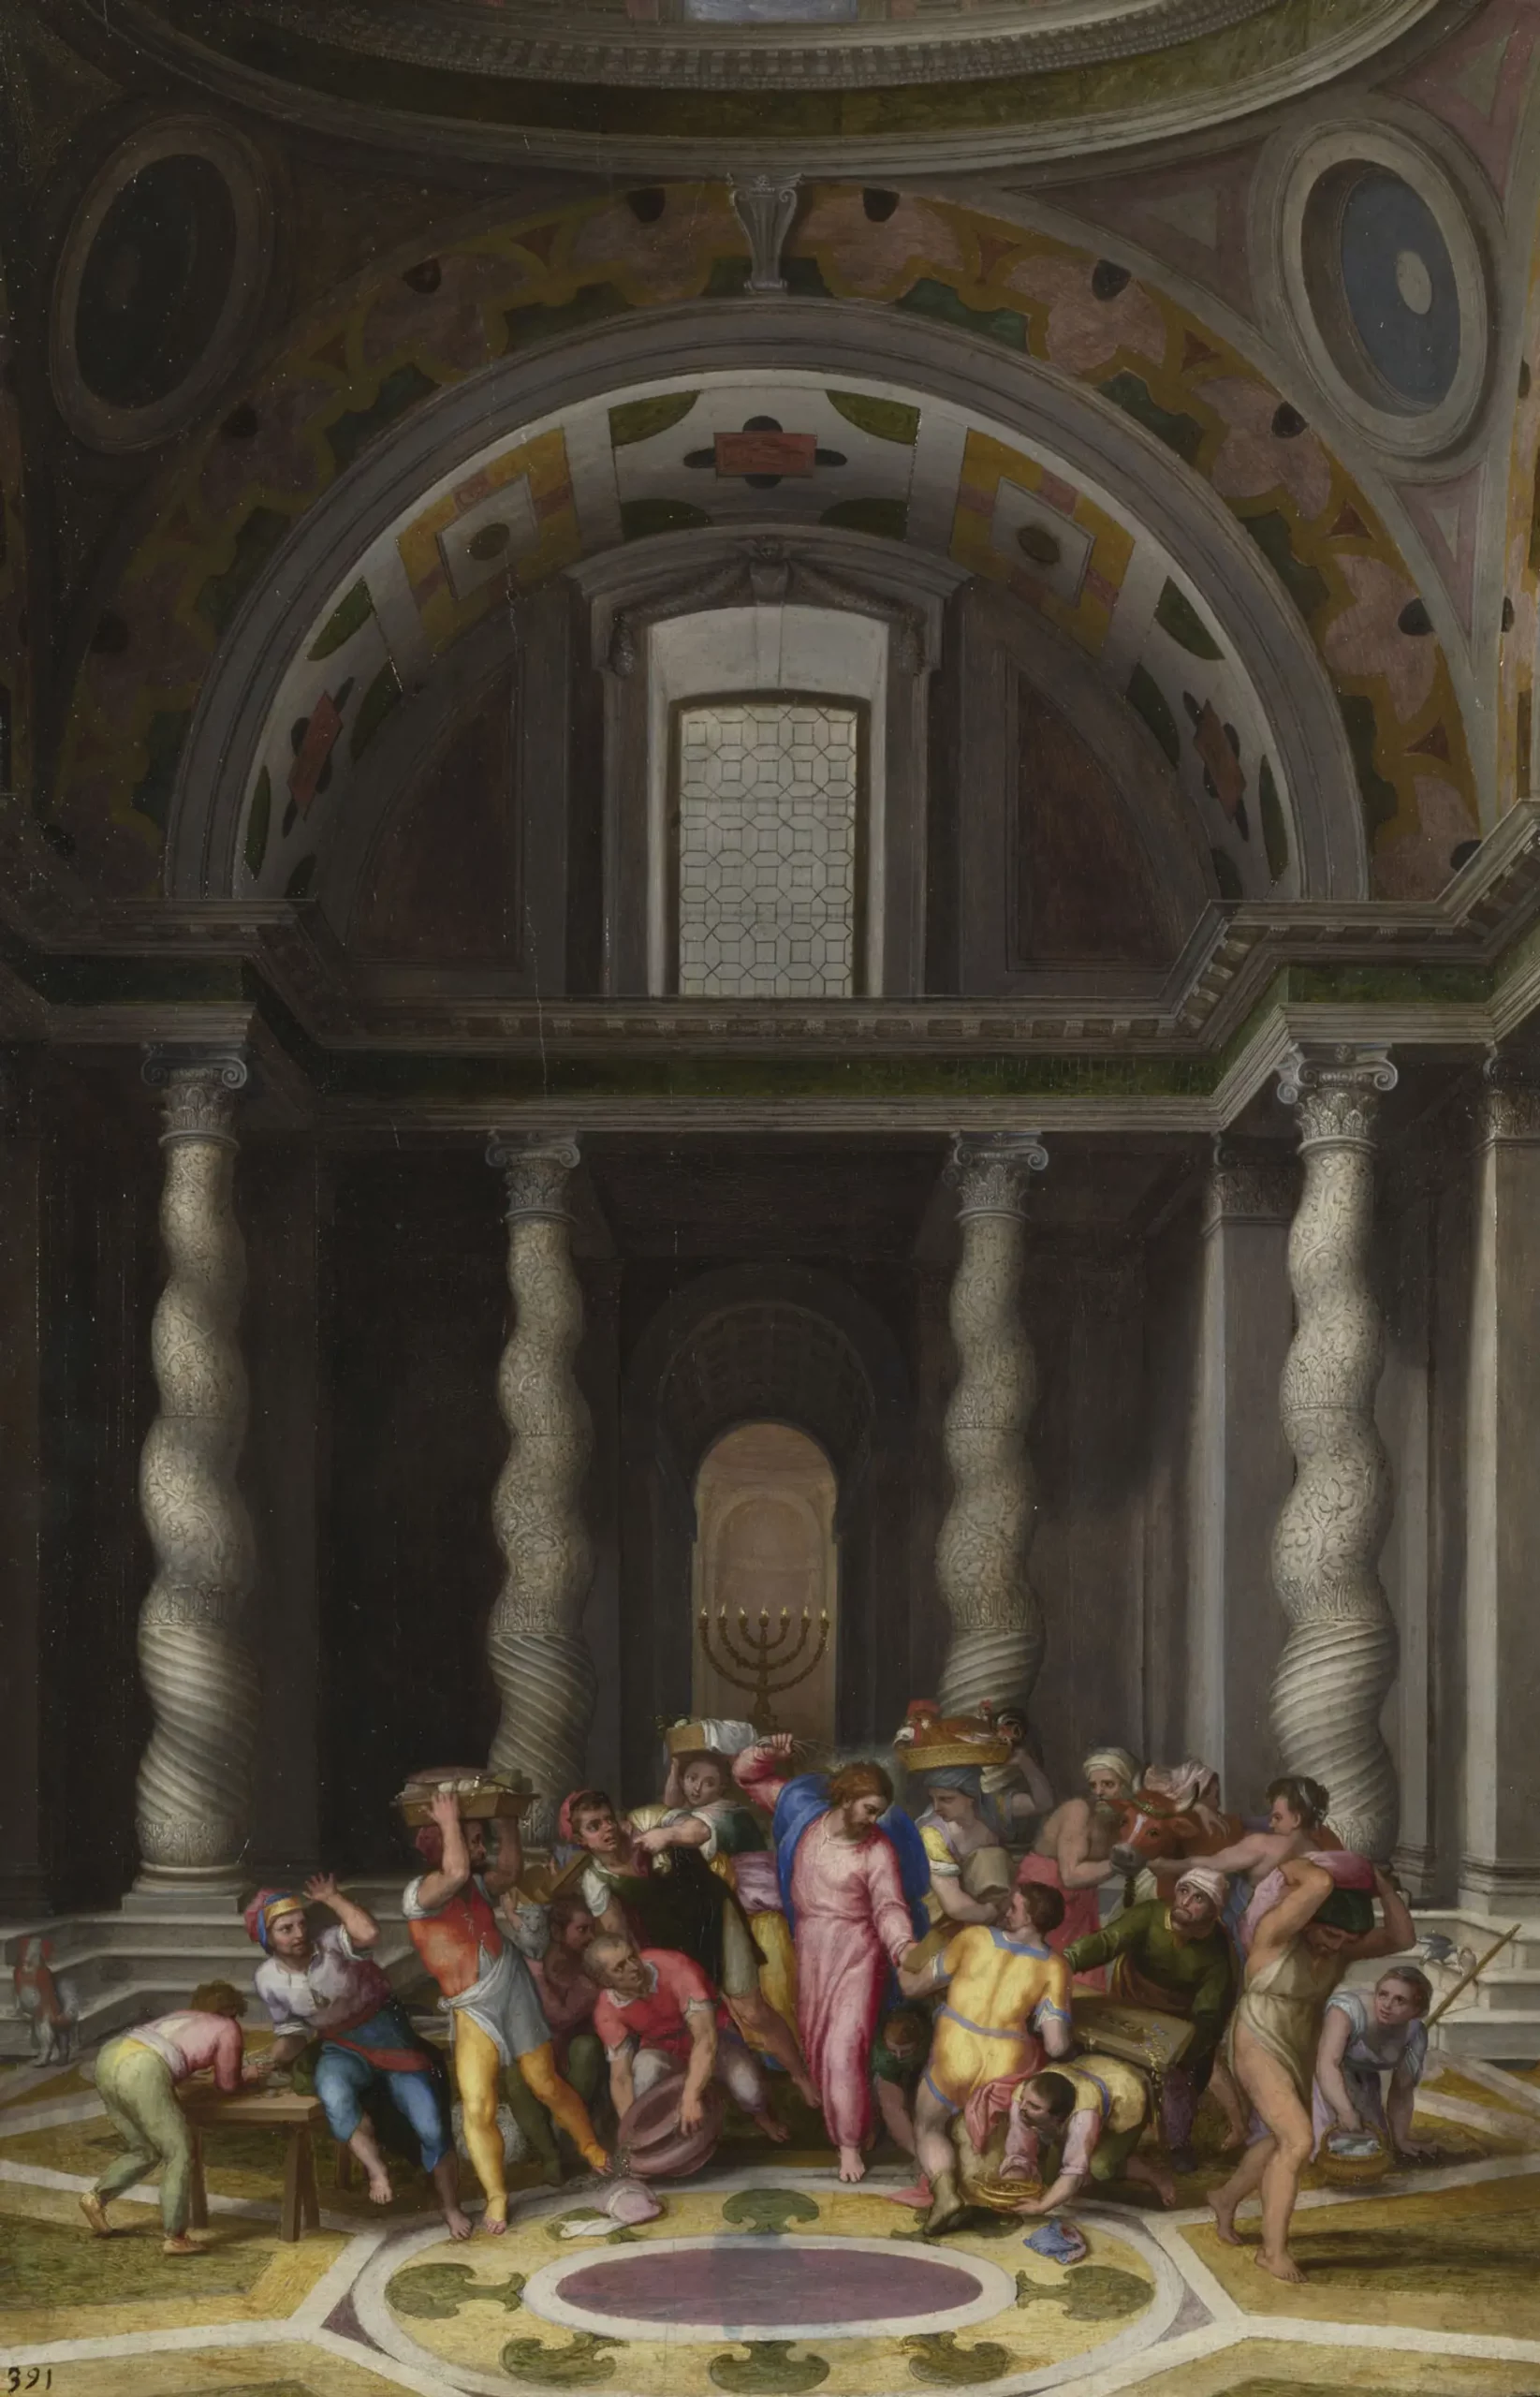 Η Απεικόνιση της Σταύρωσης από τον Μιχαήλ Άγγελο - Σχέδια και Πίνακες σε Μια Ανατρεπτική Έκθεση
